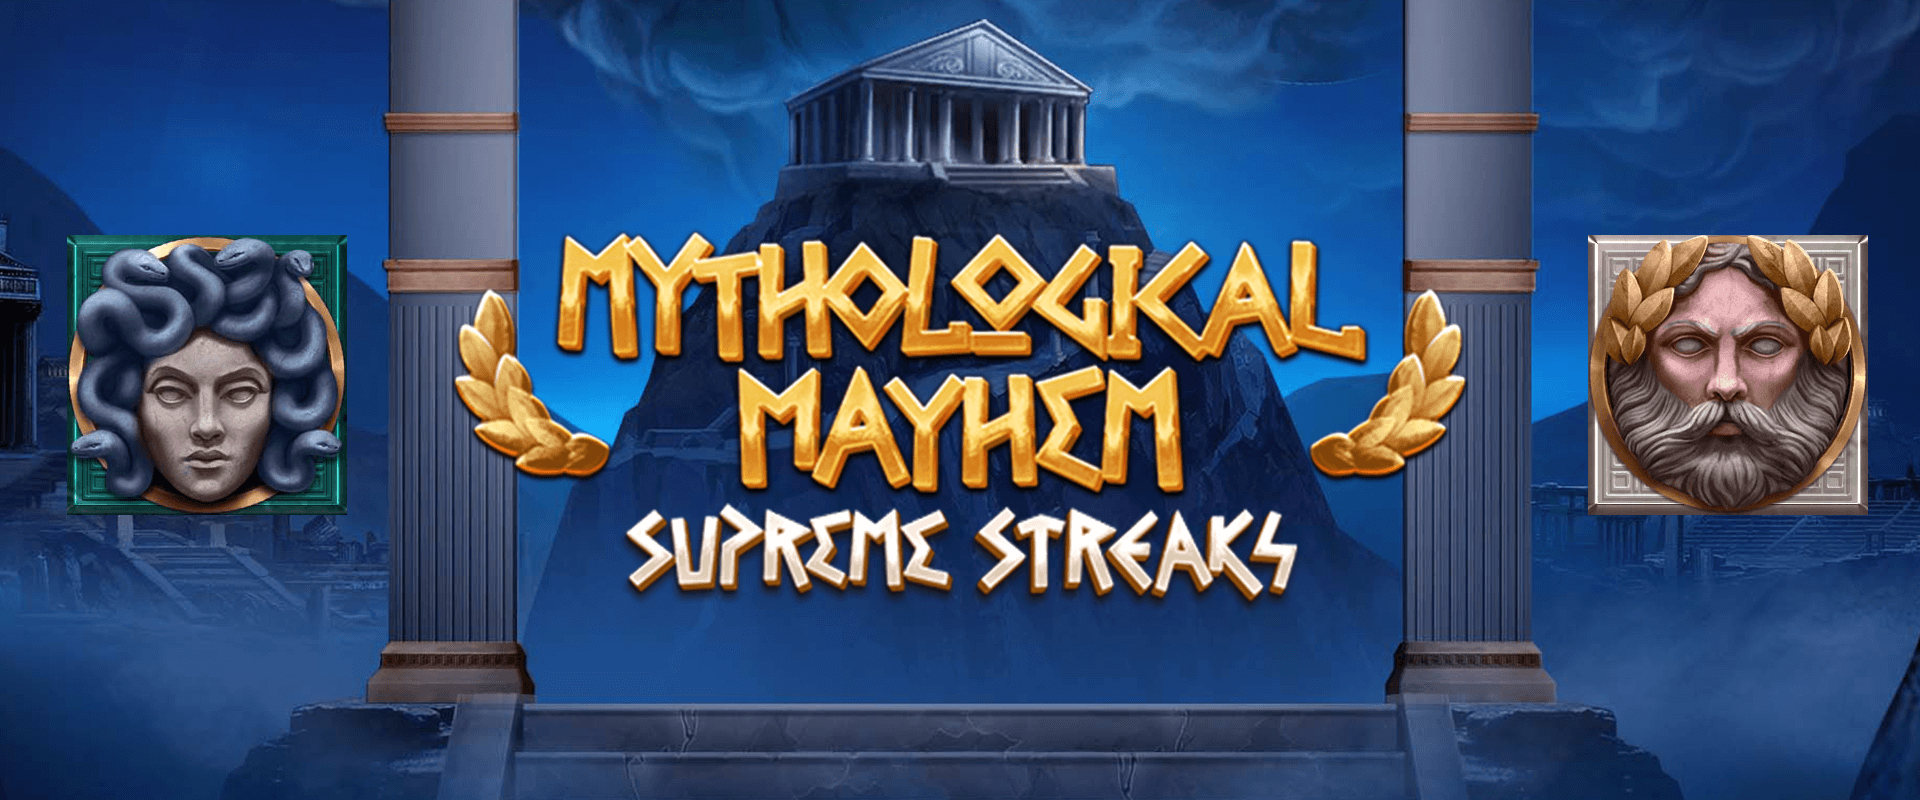 Mythological Mayhem Supreme Streaks Screenshot 1